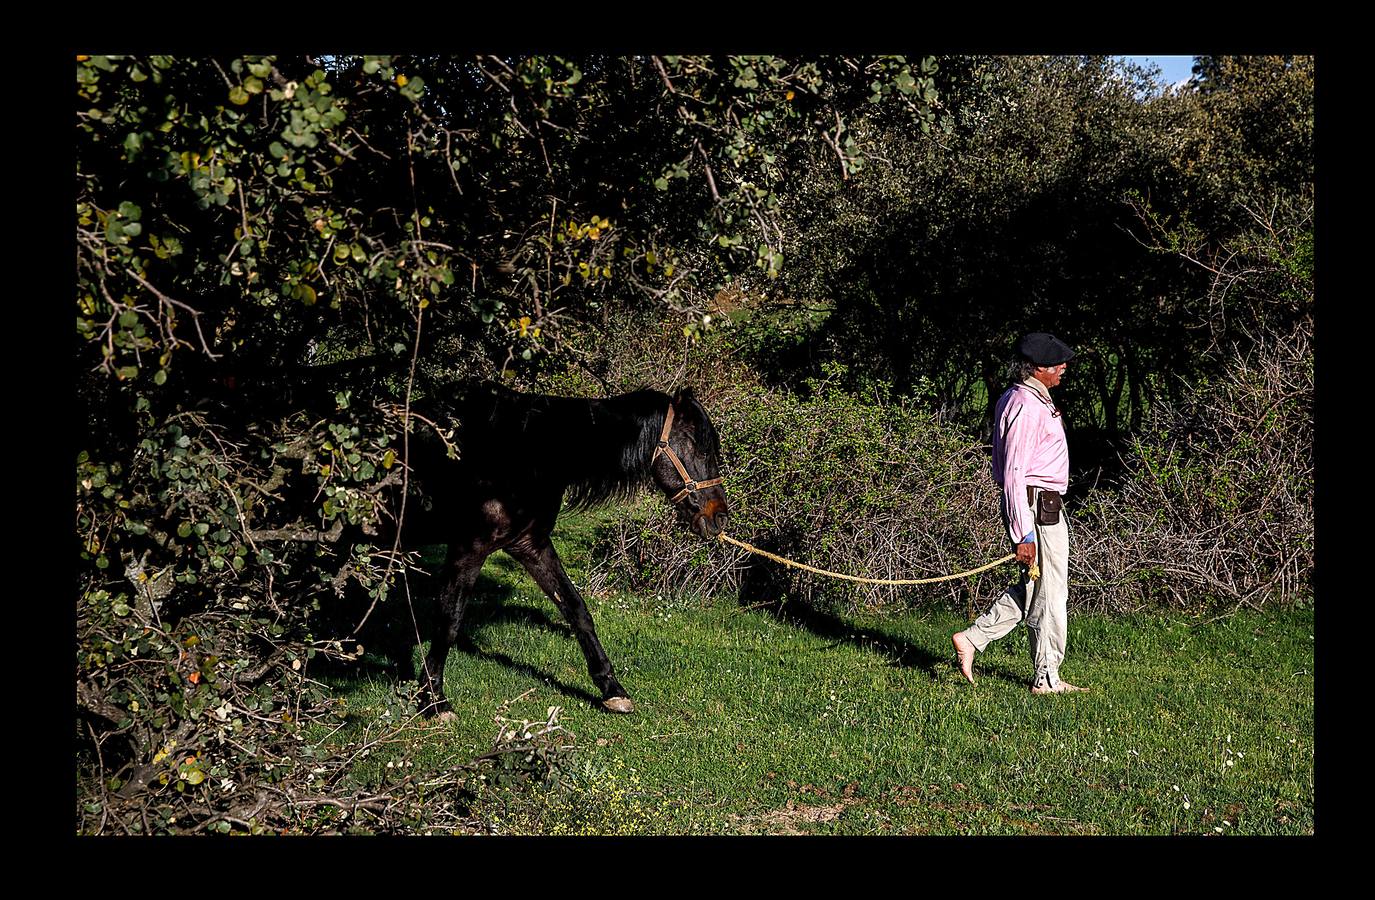 «El caballo es un espejo y puede decirme cómo me siento», asegura Fernando Noailles, de 57 años, un terapeuta emocional argentino (aparece en las fotografías con boina y bigote), que utiliza a sus equinos para ayudar a las personas que sufren estrés y ansiedad. La terapia consiste en observar las respuestas del caballo a los estados de ánimo del cliente, de tal manera que al fijarse en la reacción del animal, el paciente aprende a identificar y controlar sus propias emociones. Los participantes en estas sesiones, que se desarrollan en Guadalix de la Sierra, en las afueras de Madrid, pueden pagar hasta 120 euros por cada una de ellas.